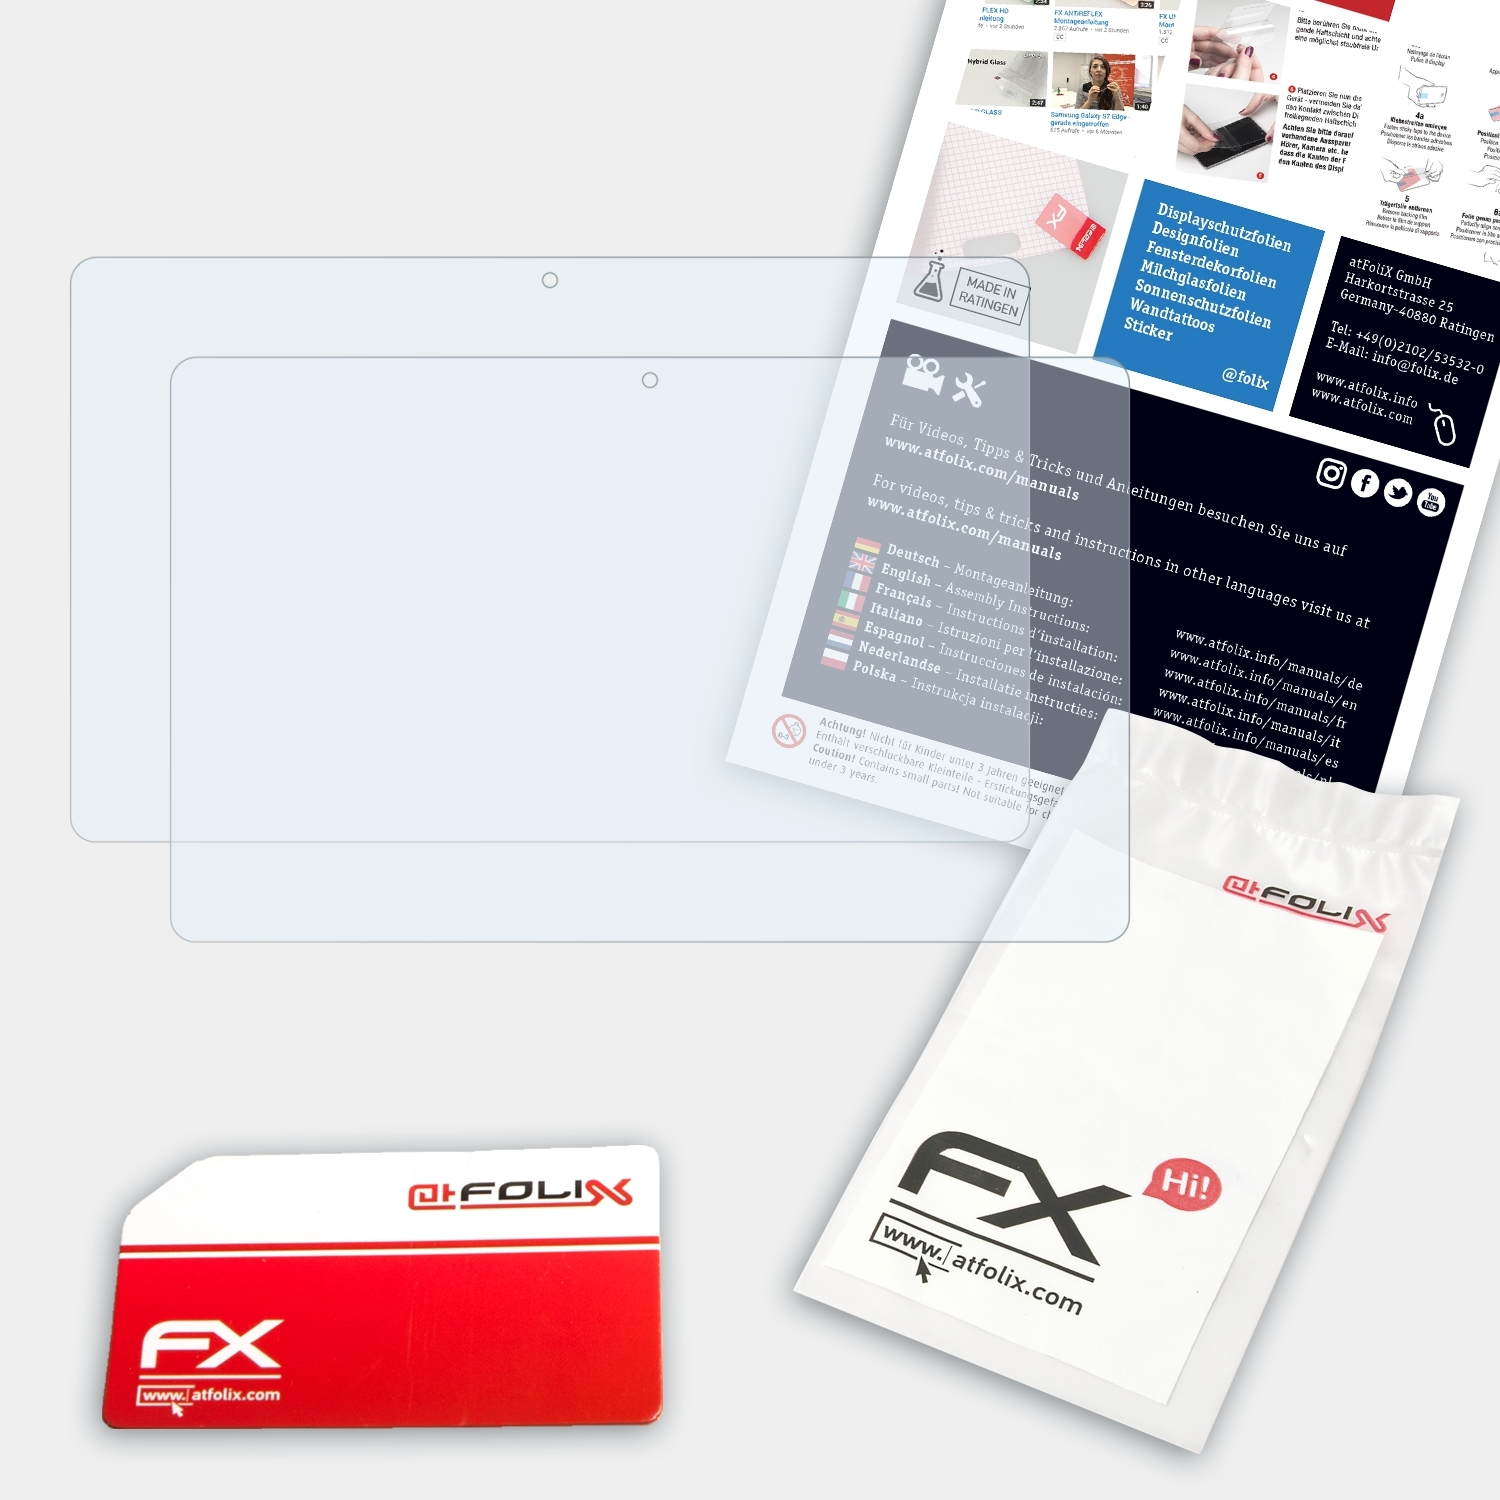 2x ATFOLIX Acer Iconia W700) FX-Clear Displayschutz(für